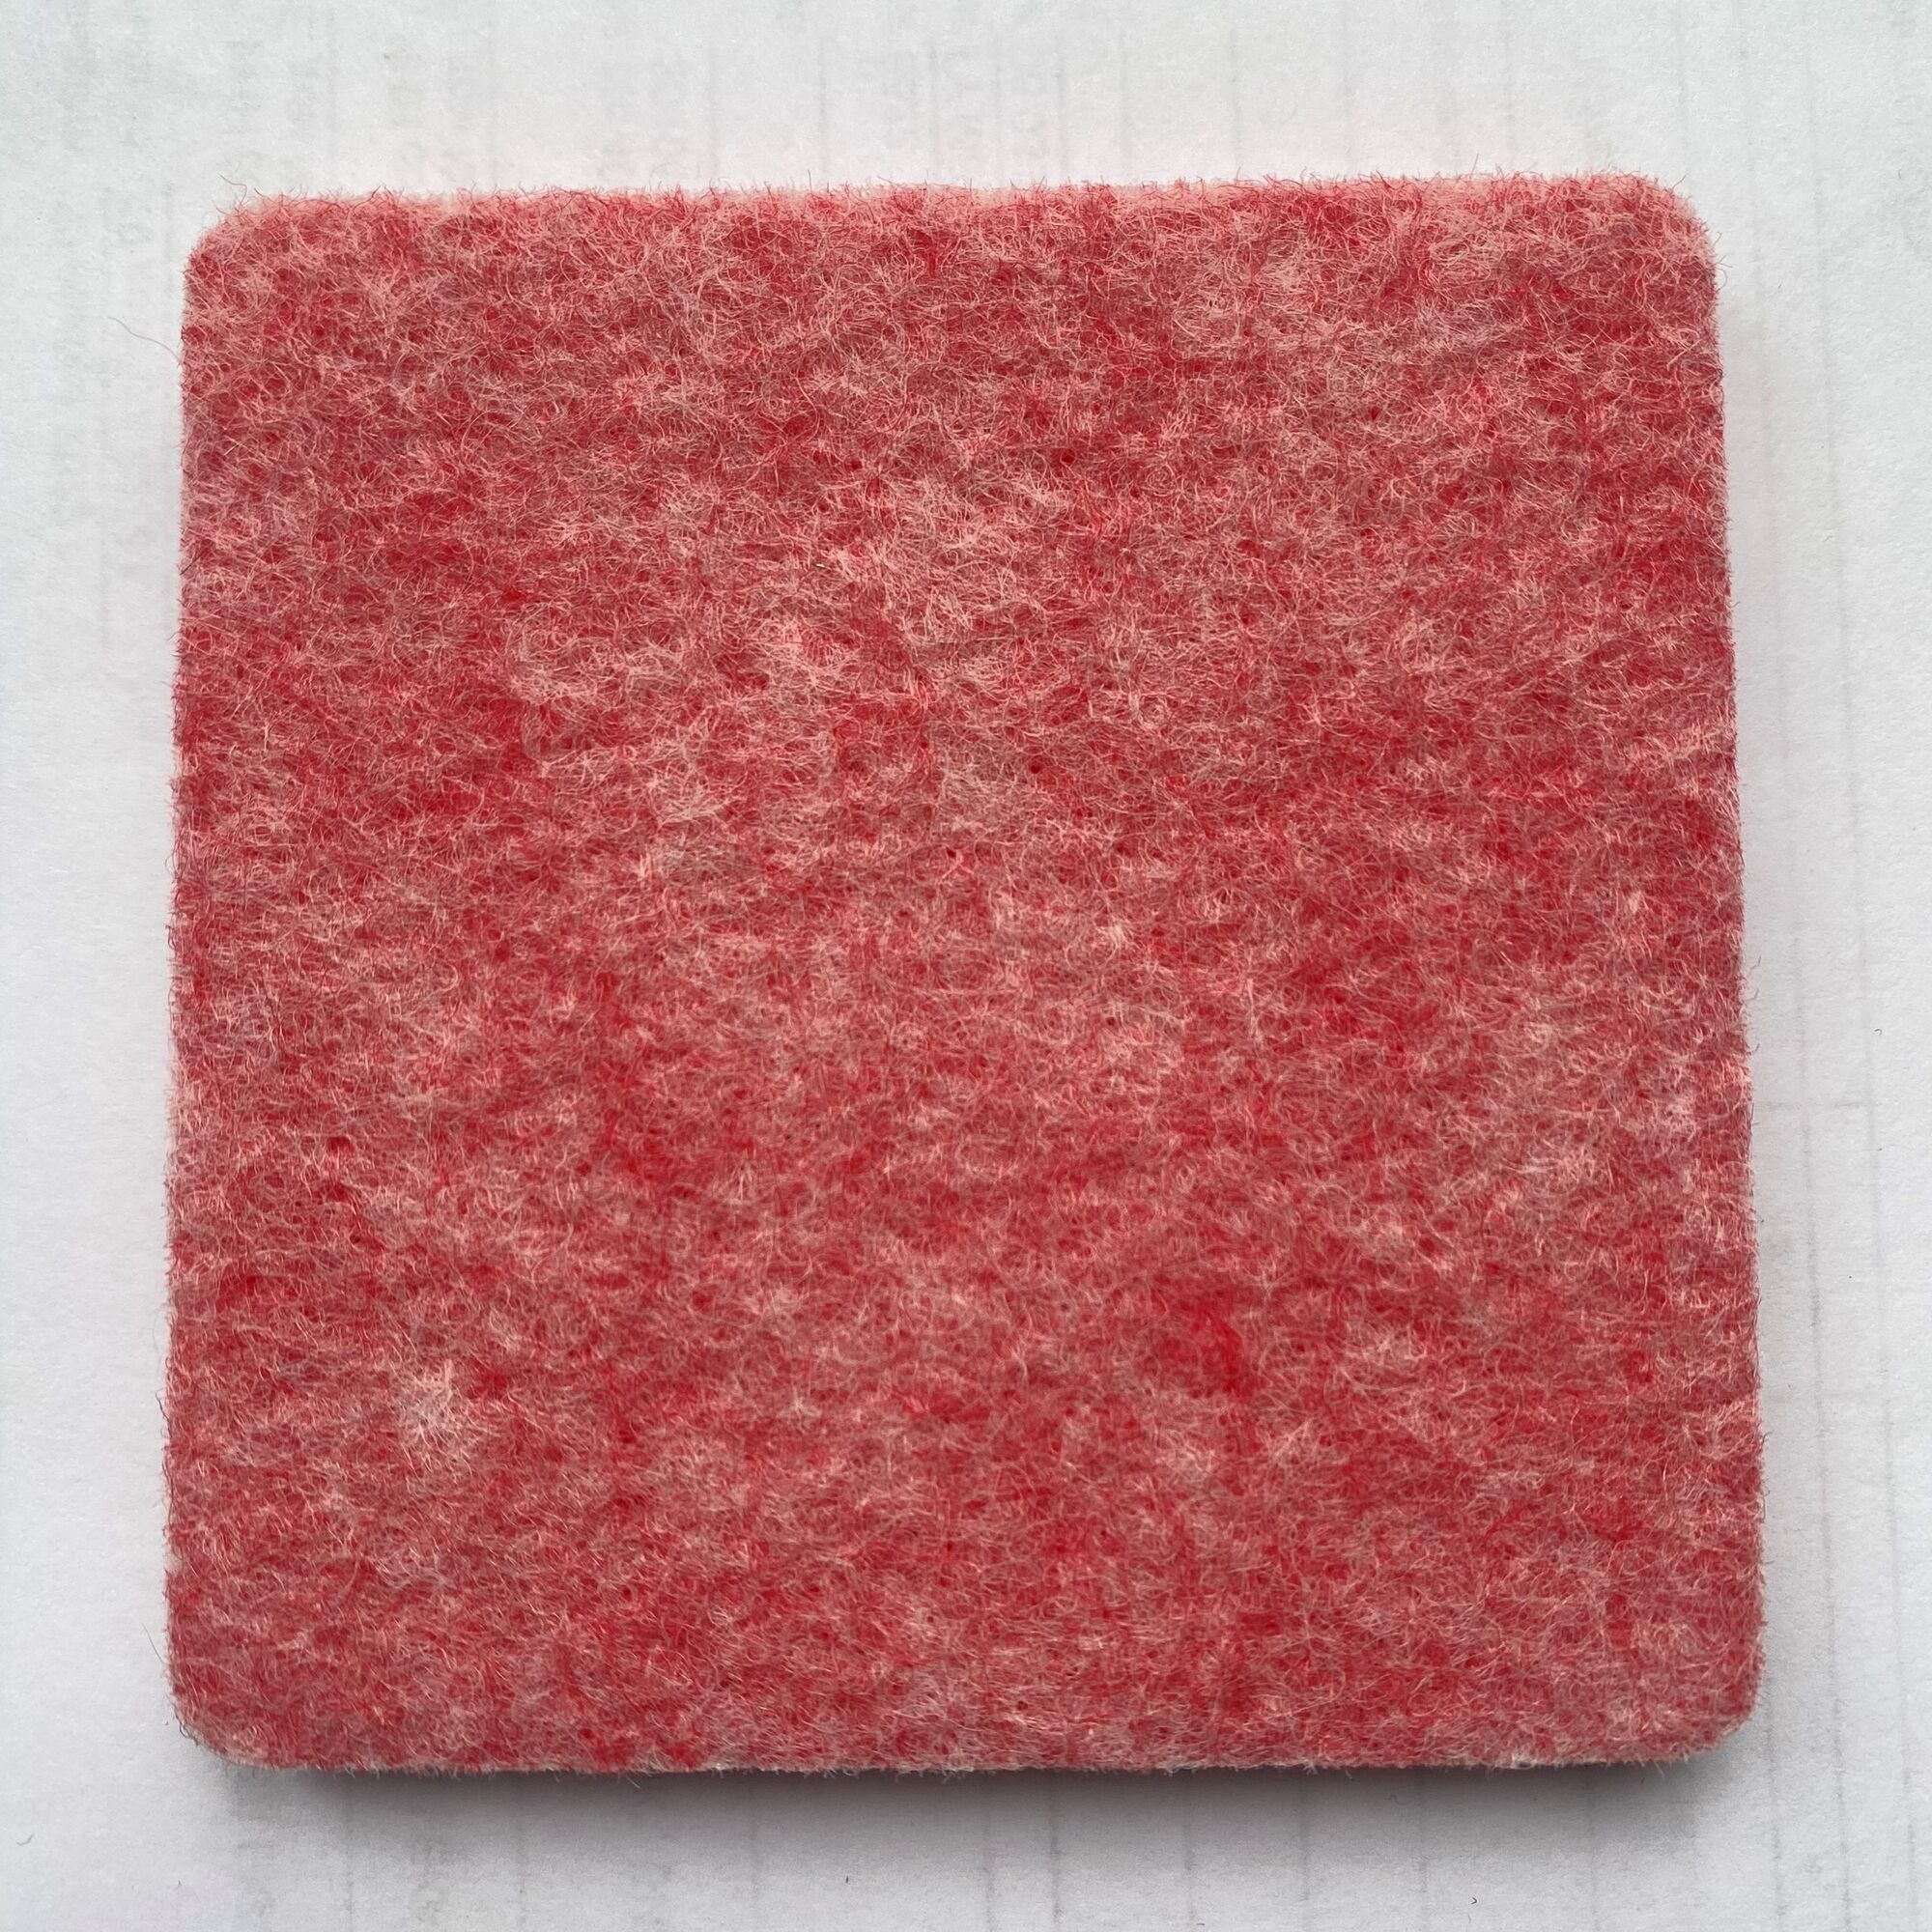 Войлок искусственный 9 мм 1,2х2,4 м розовый кварц